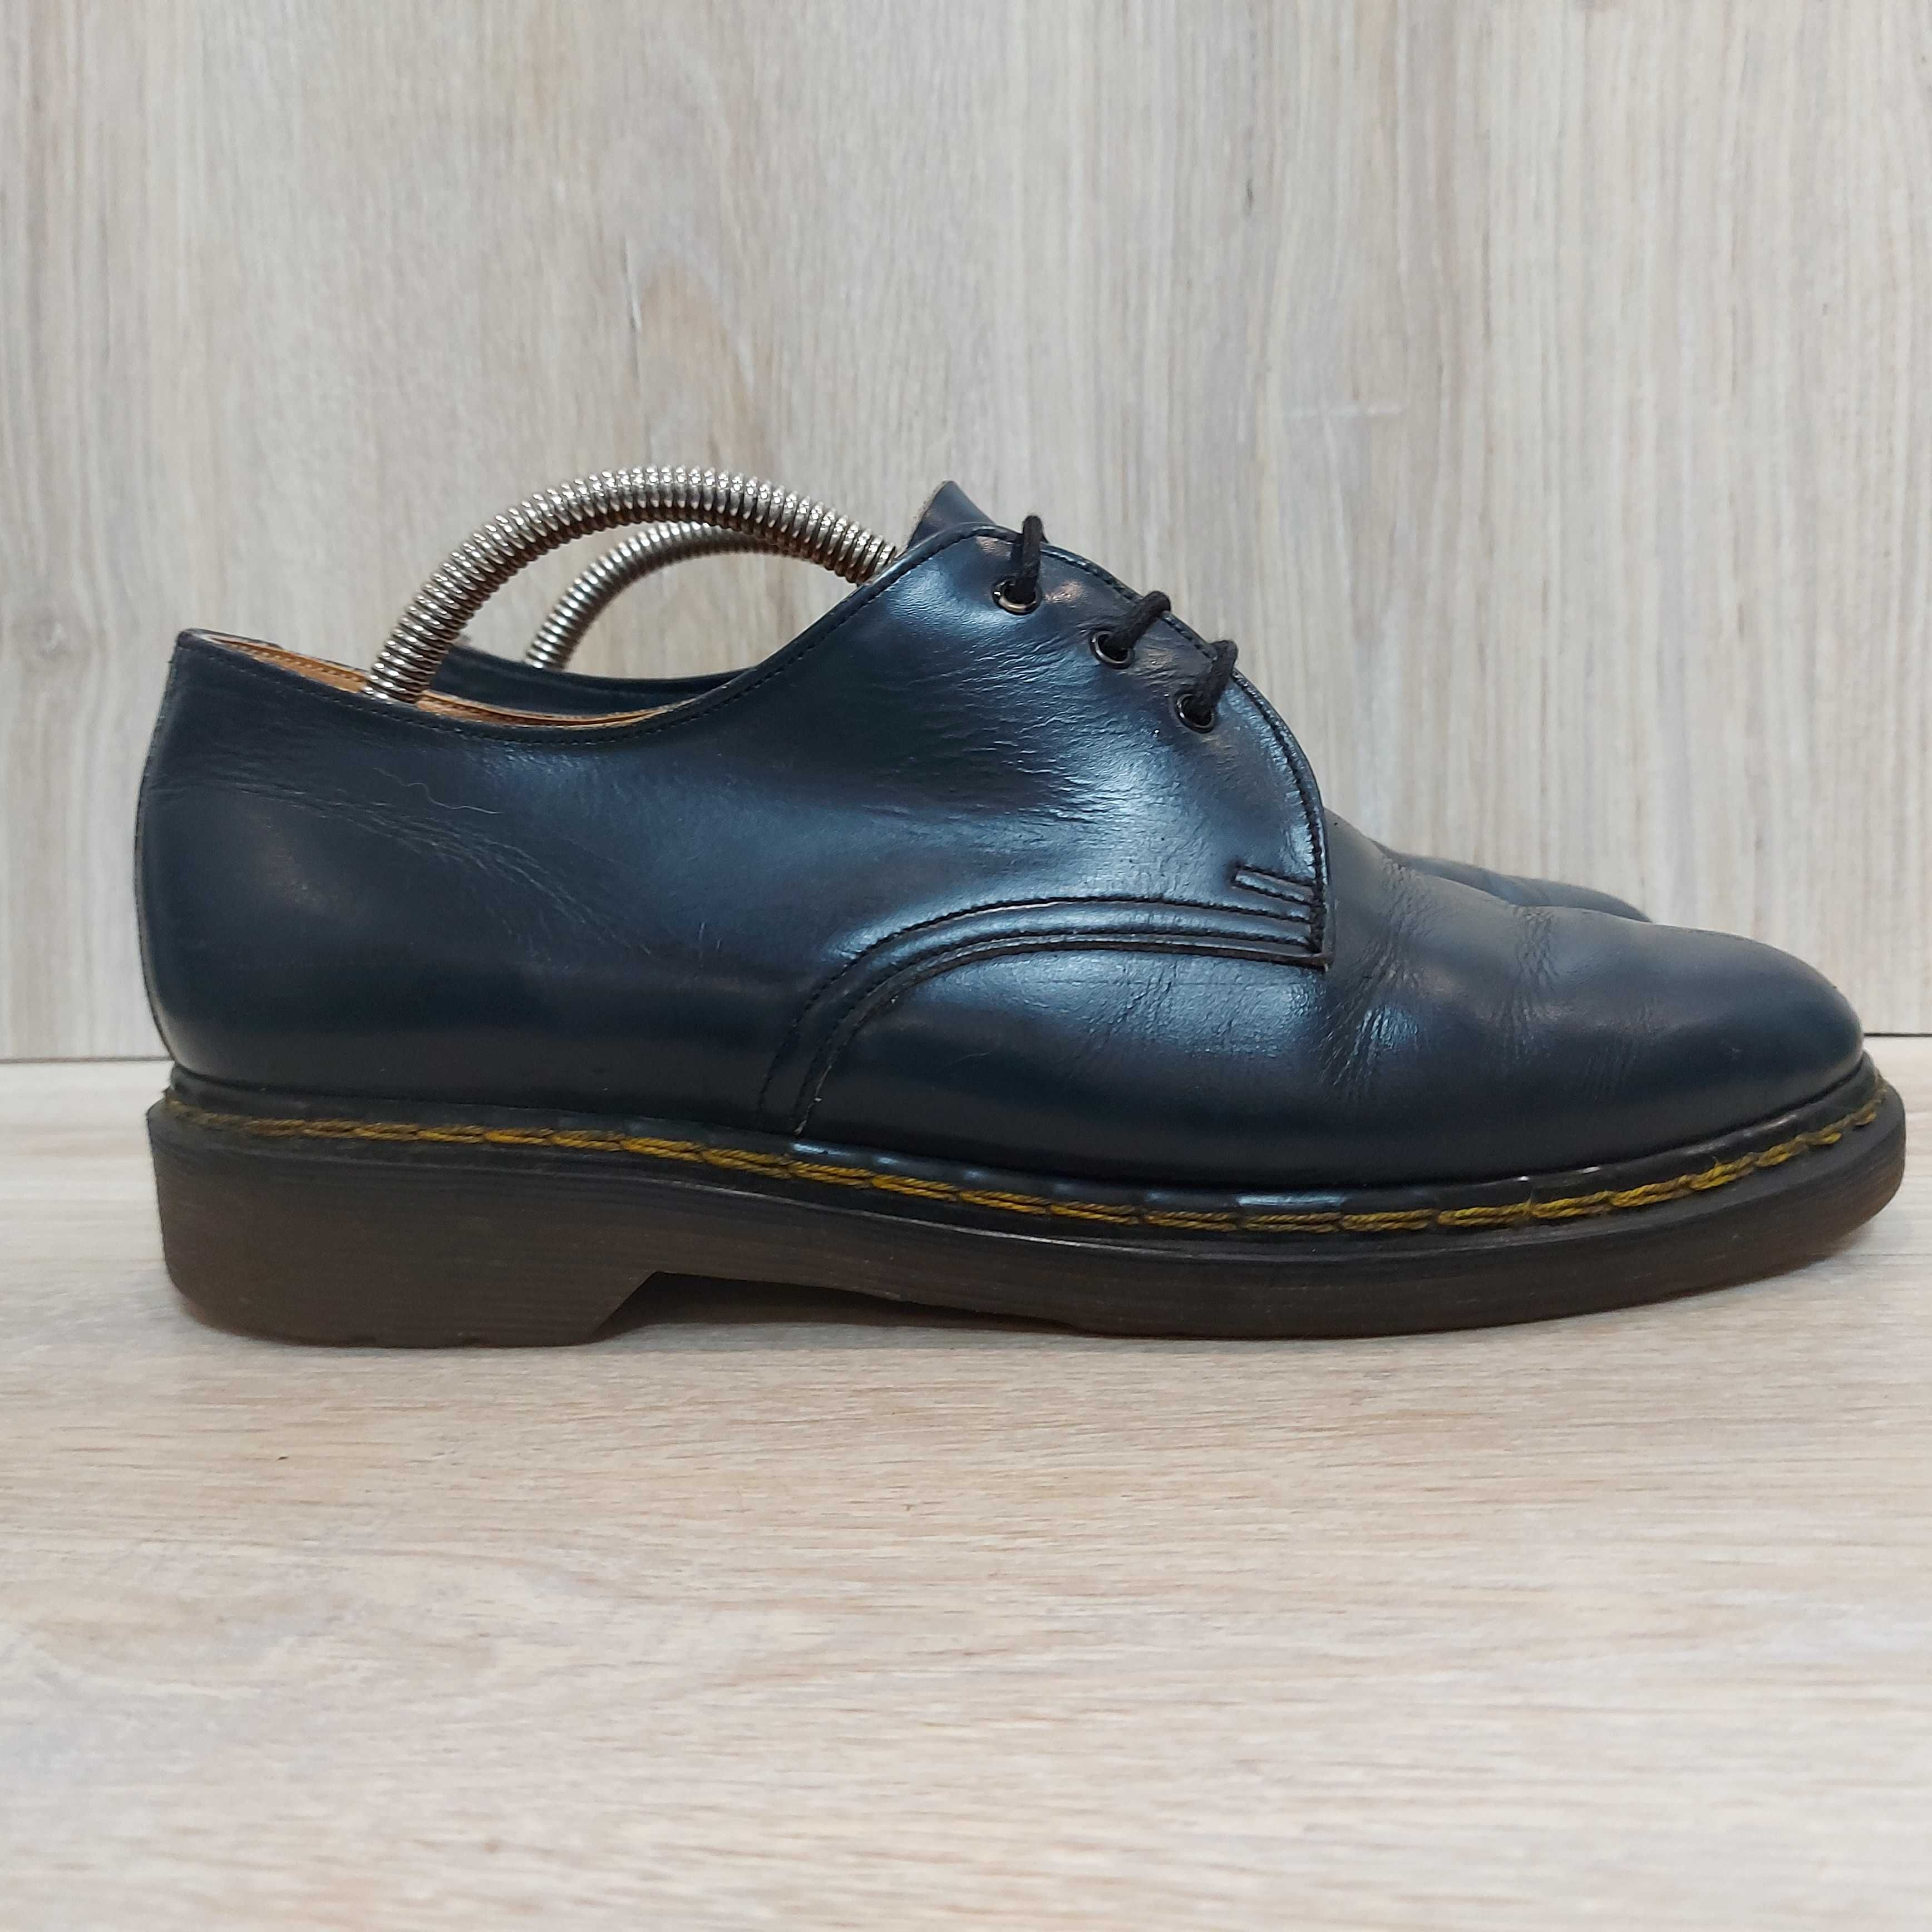 Кожаные туфли Dr. Martens Made in England оригинал